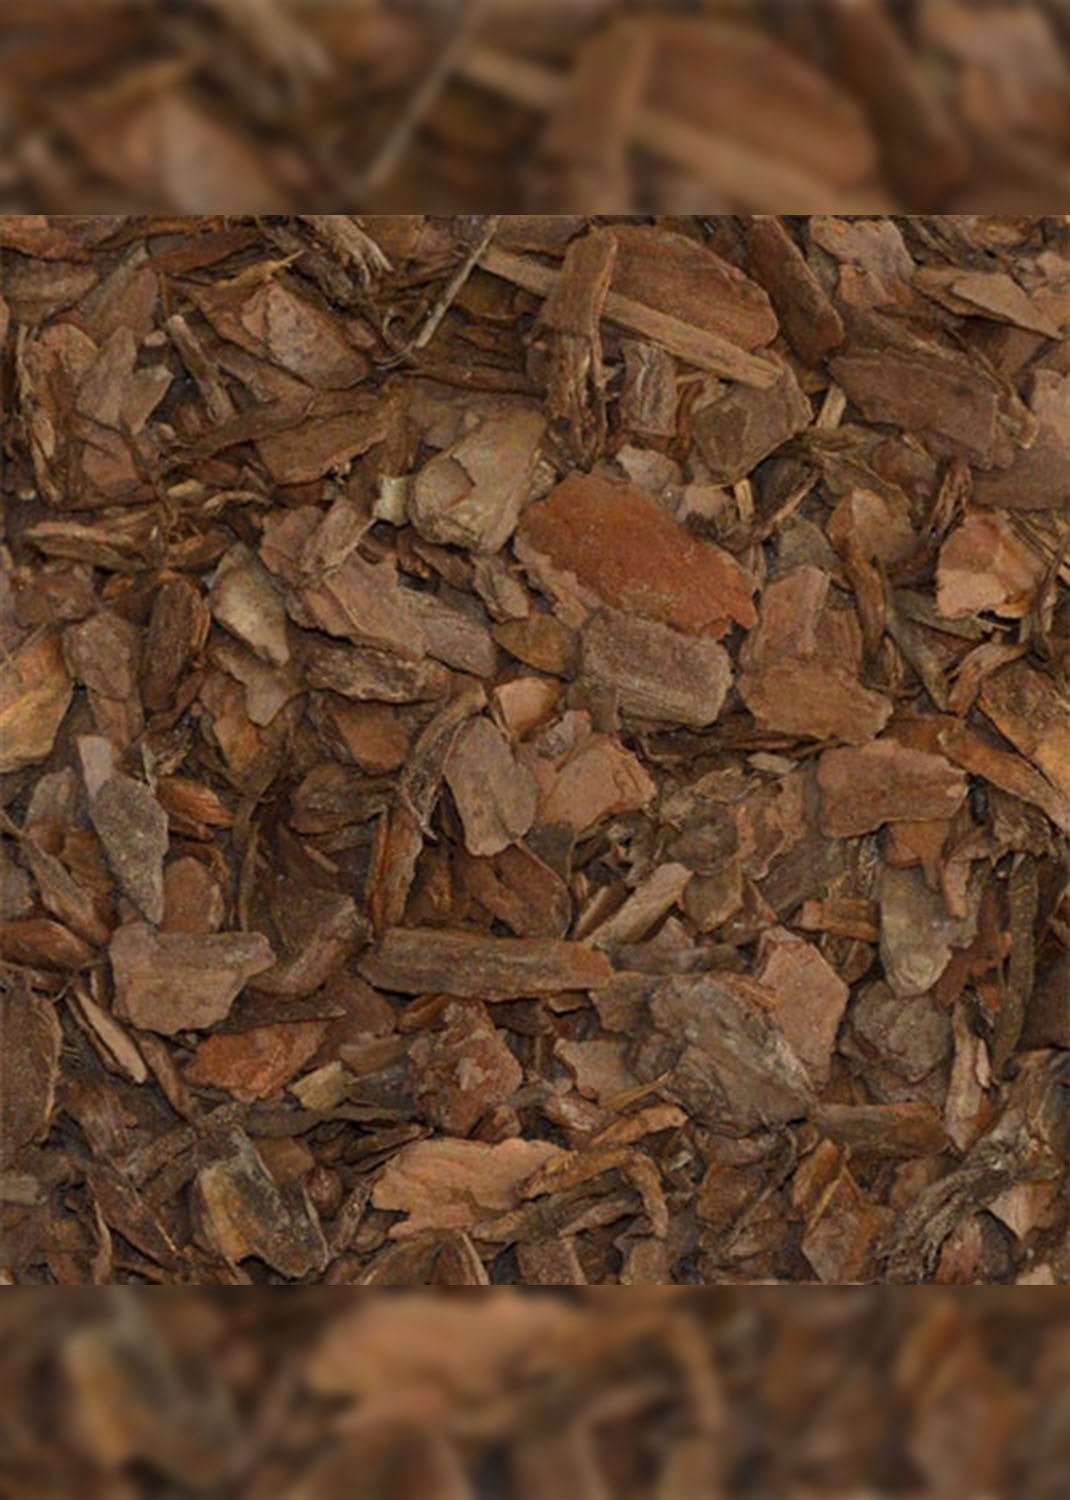 Pine Bark Mulch Per KG